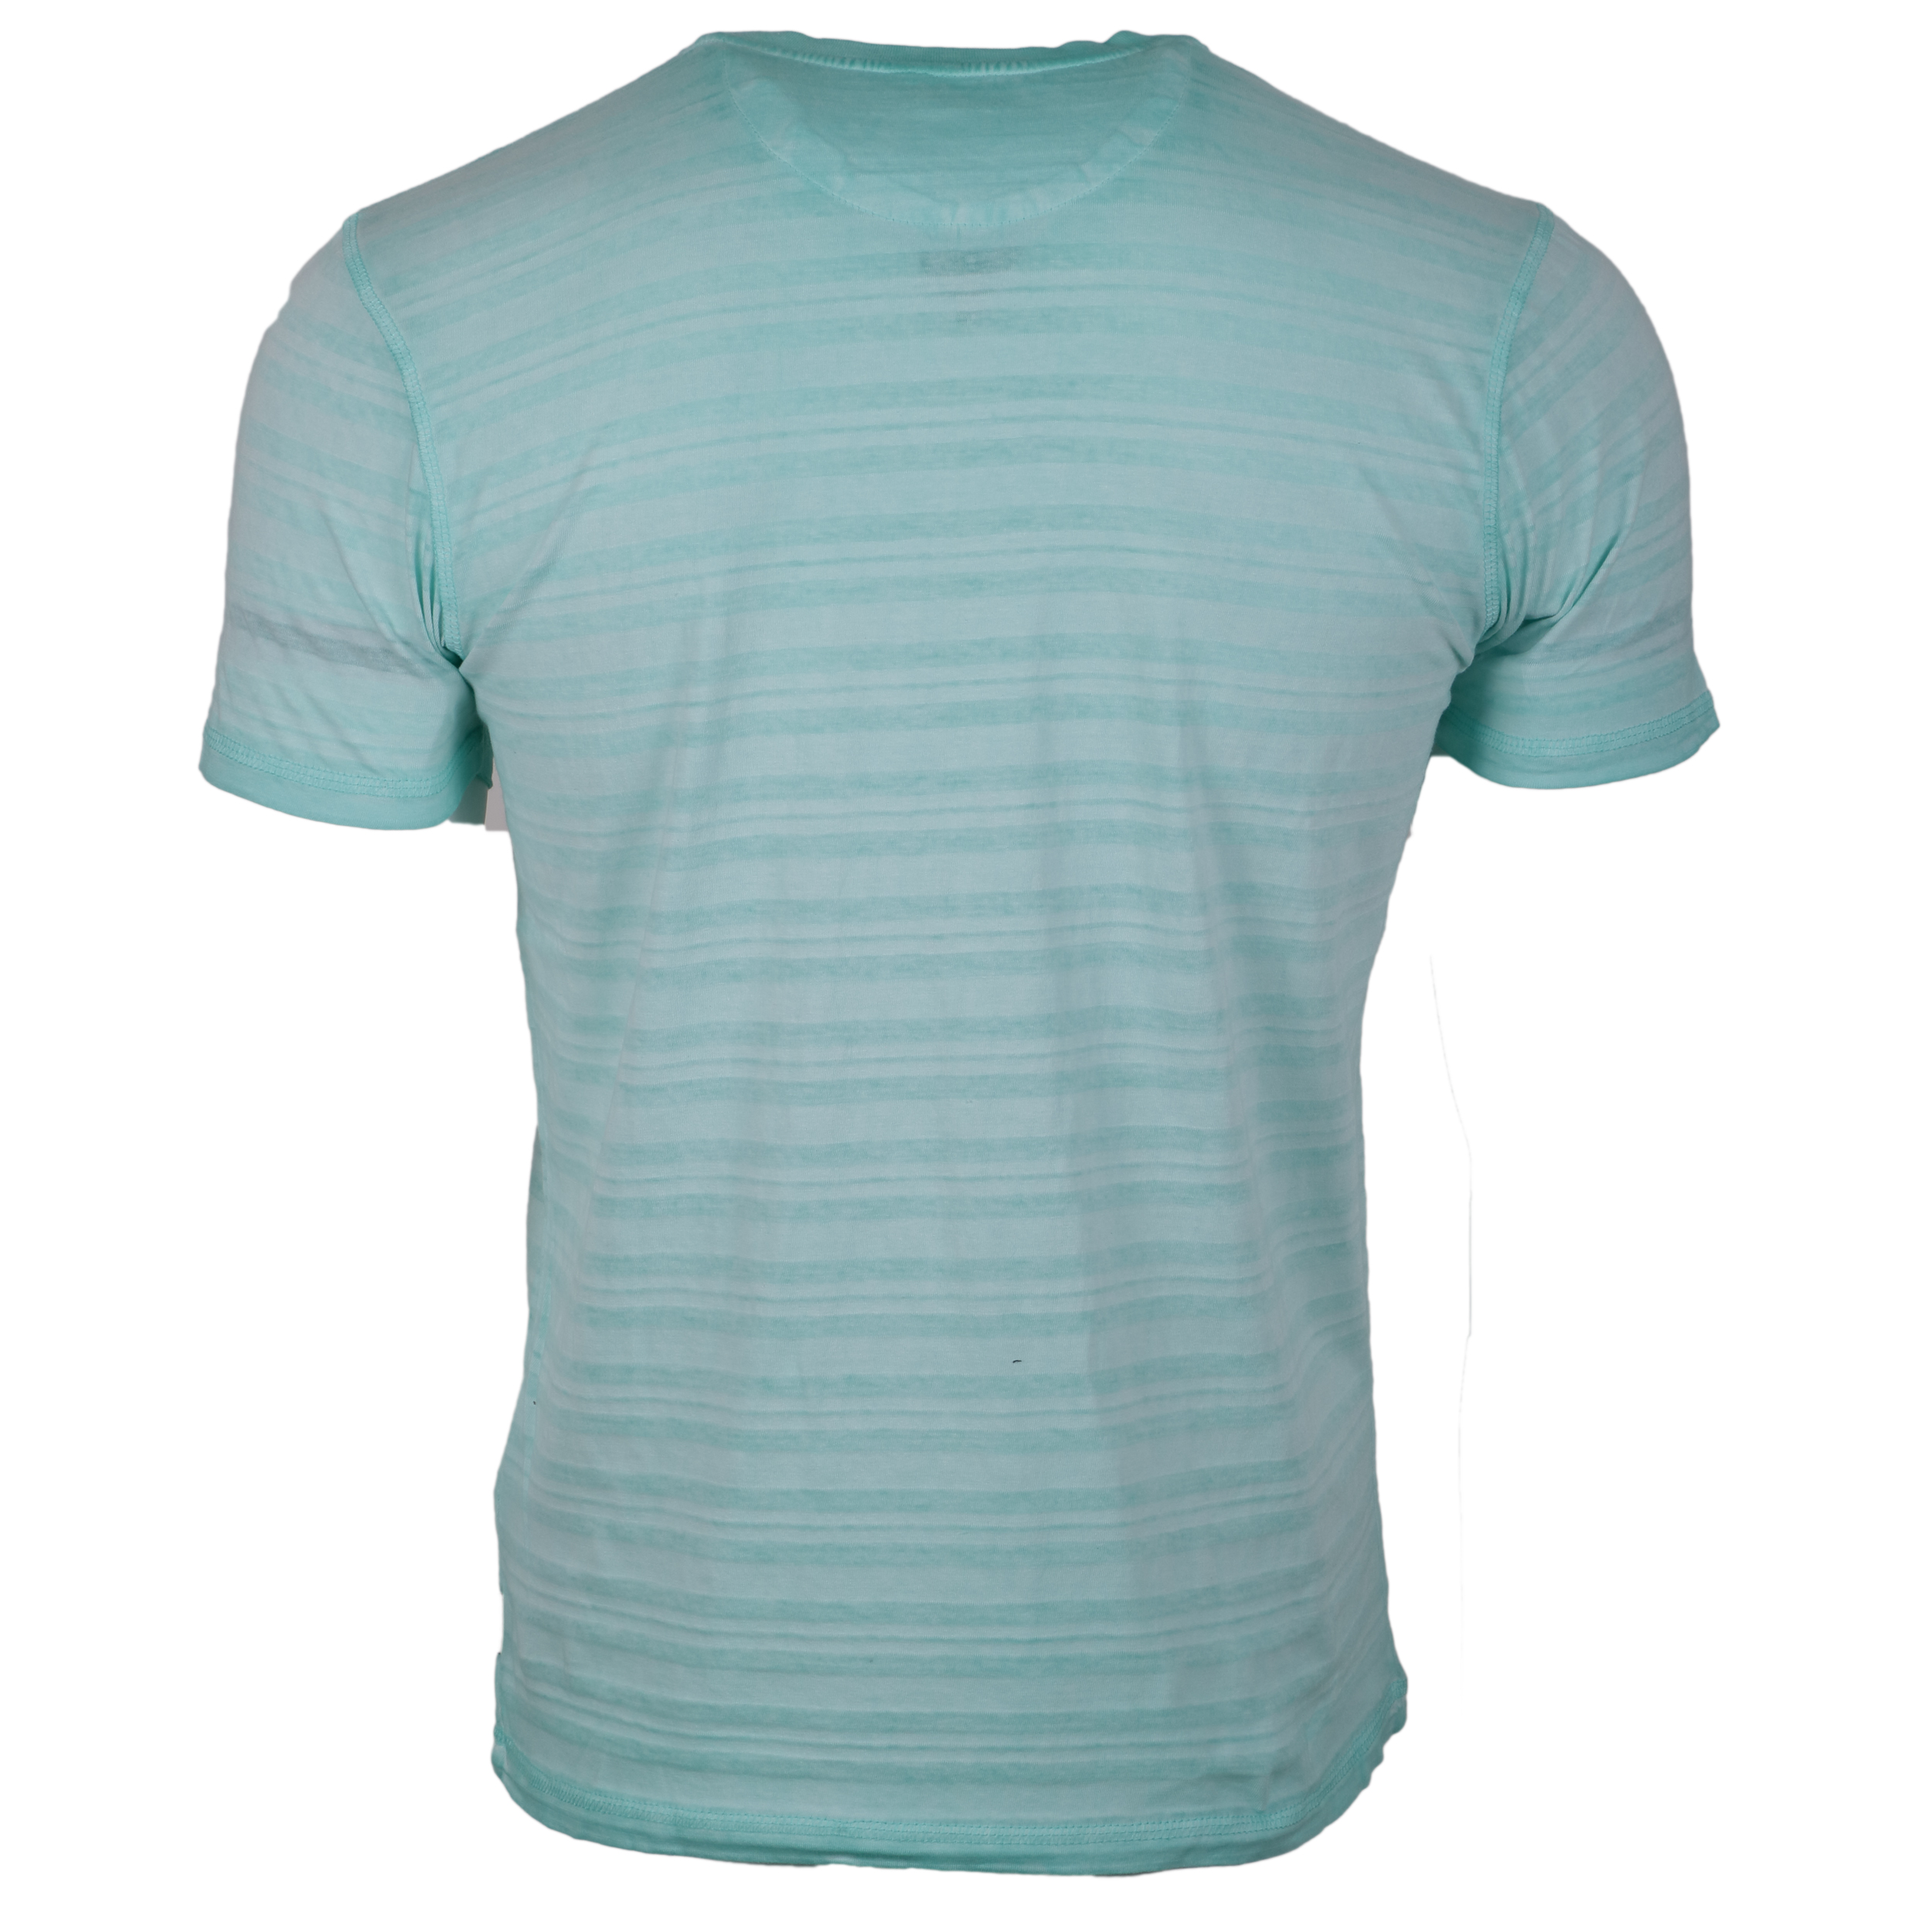 Pioneer Herren T-Shirt Knopfleiste XL mint